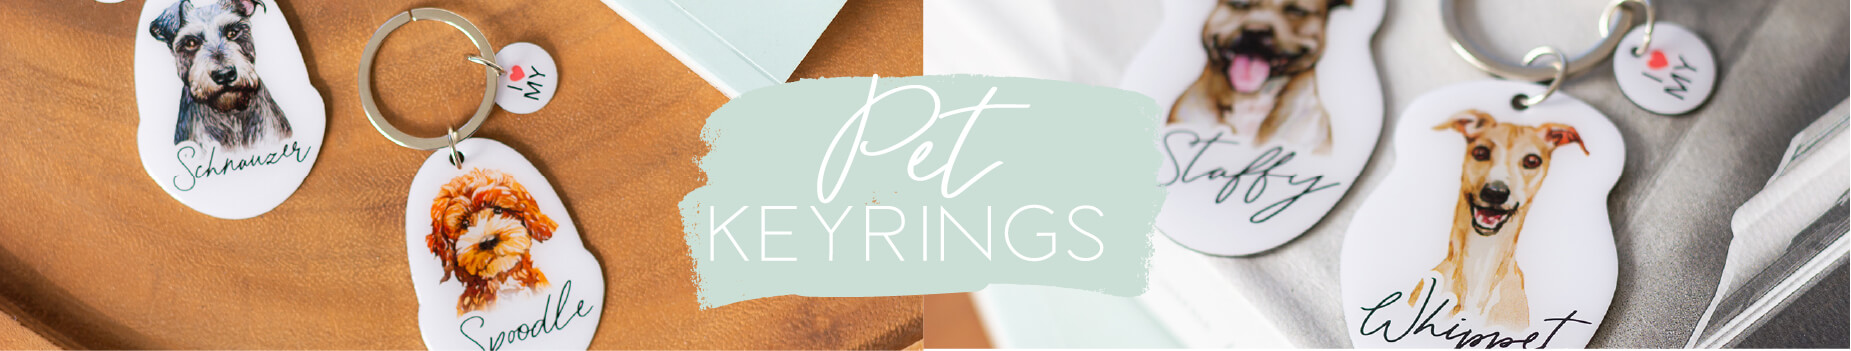 Pet Keyrings